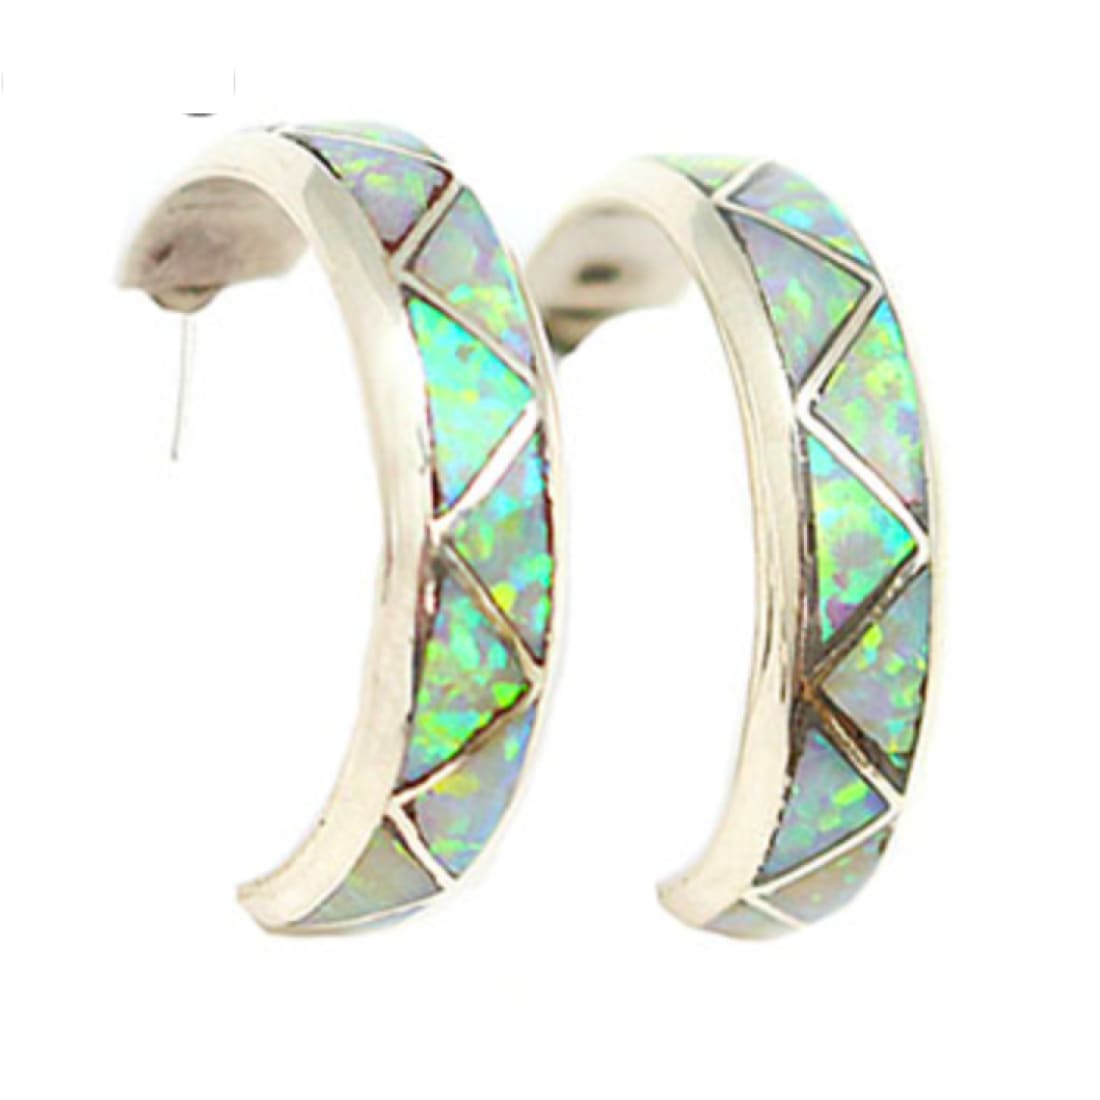 Zuni Opal Inlay Hoop Earrings 1/2” Diameter Sterling Silver